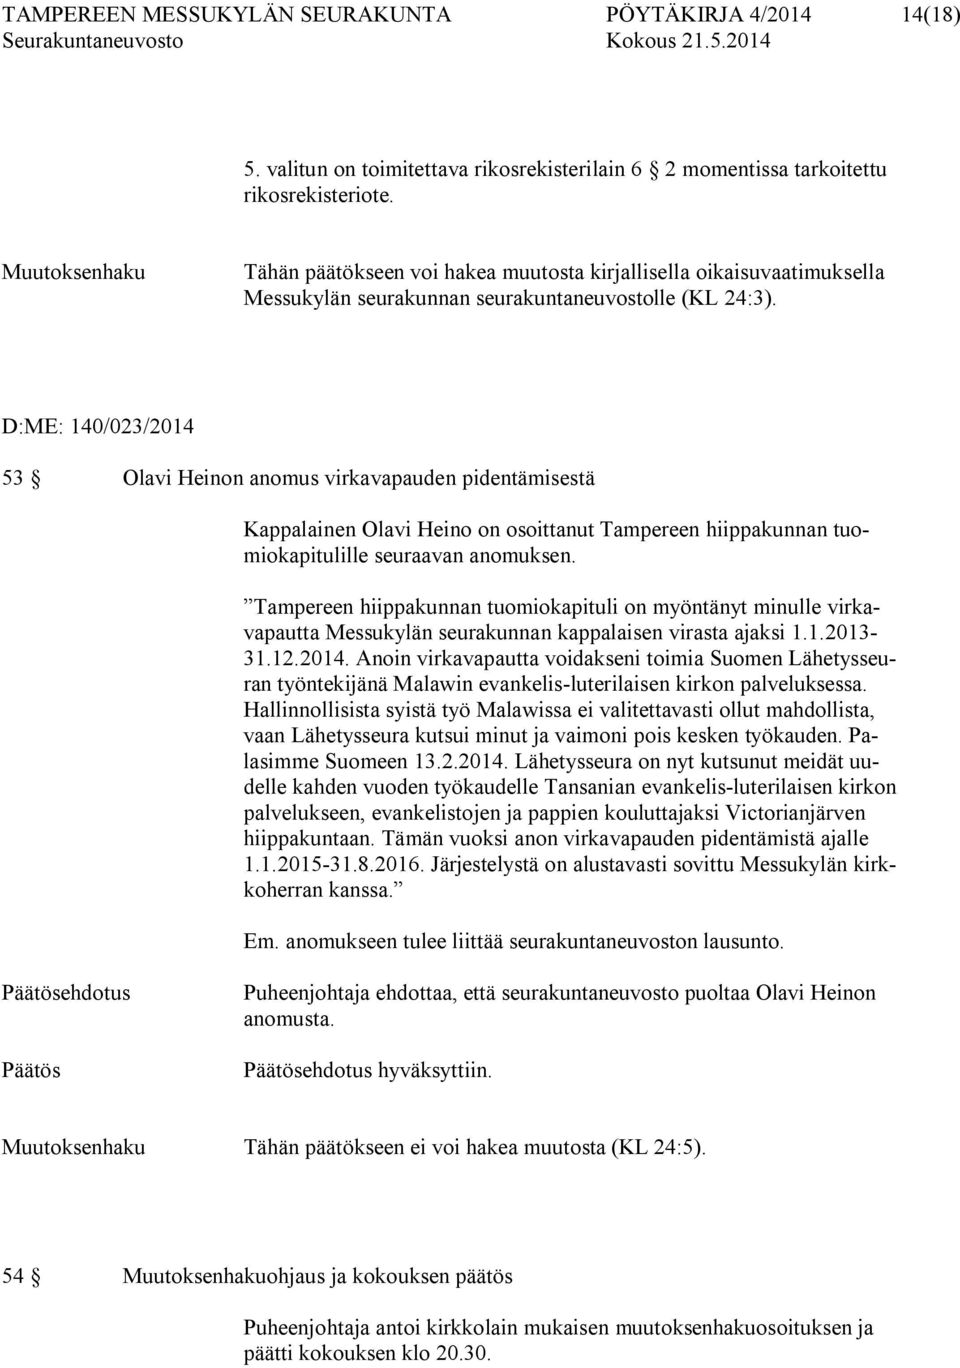 D:ME: 140/023/2014 53 Olavi Heinon anomus virkavapauden pidentämisestä Kappalainen Olavi Heino on osoittanut Tampereen hiippakunnan tuomiokapitulille seuraavan anomuksen.